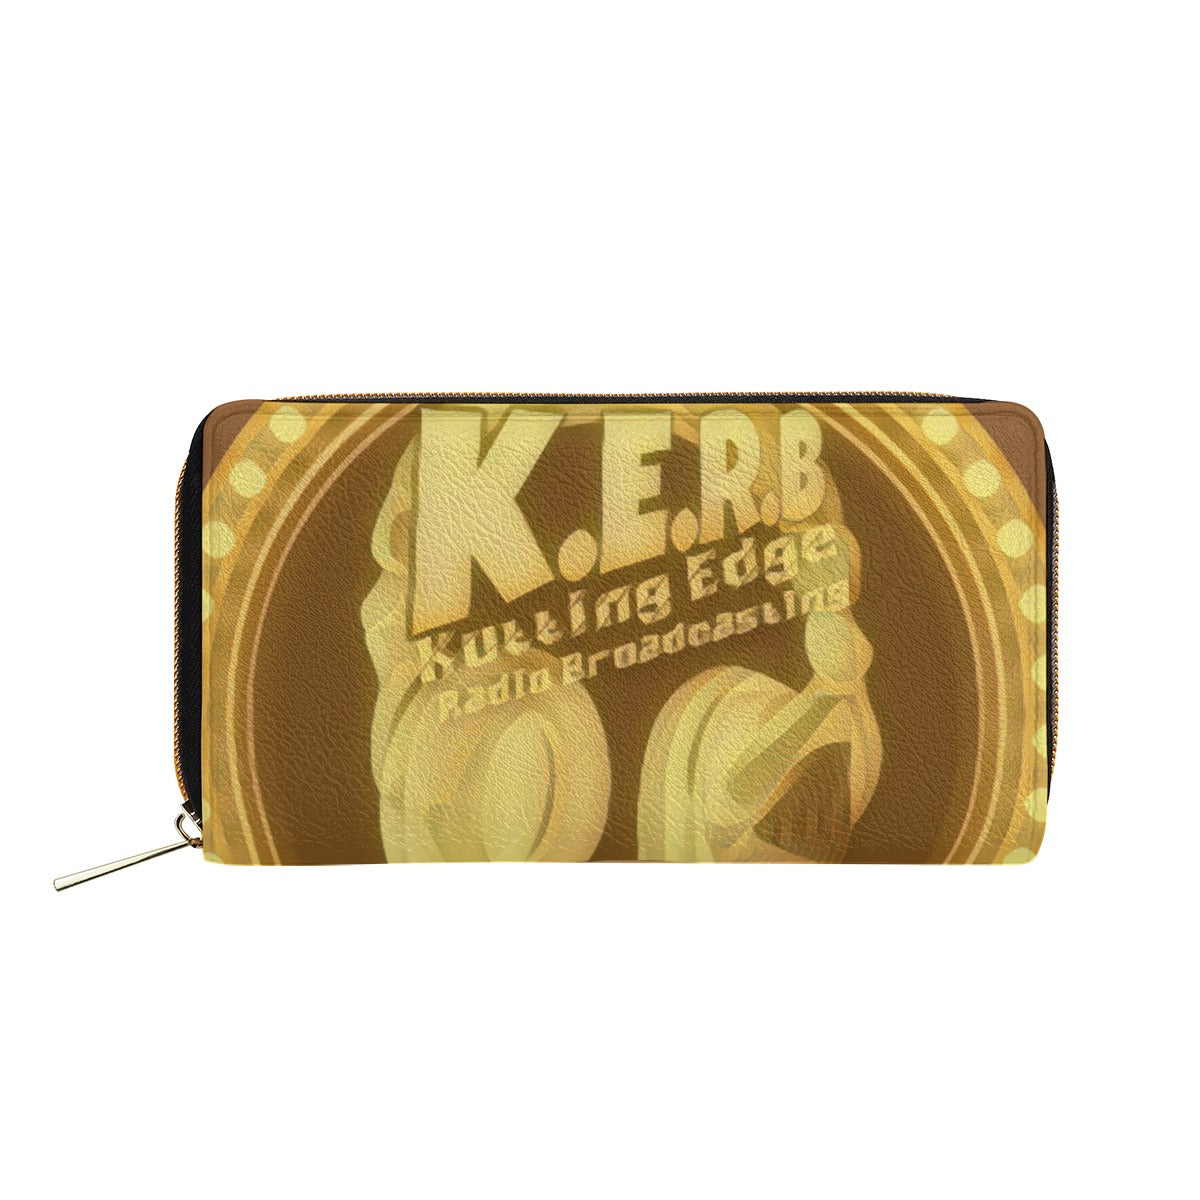 KERB Gold Rush Logo Wallet